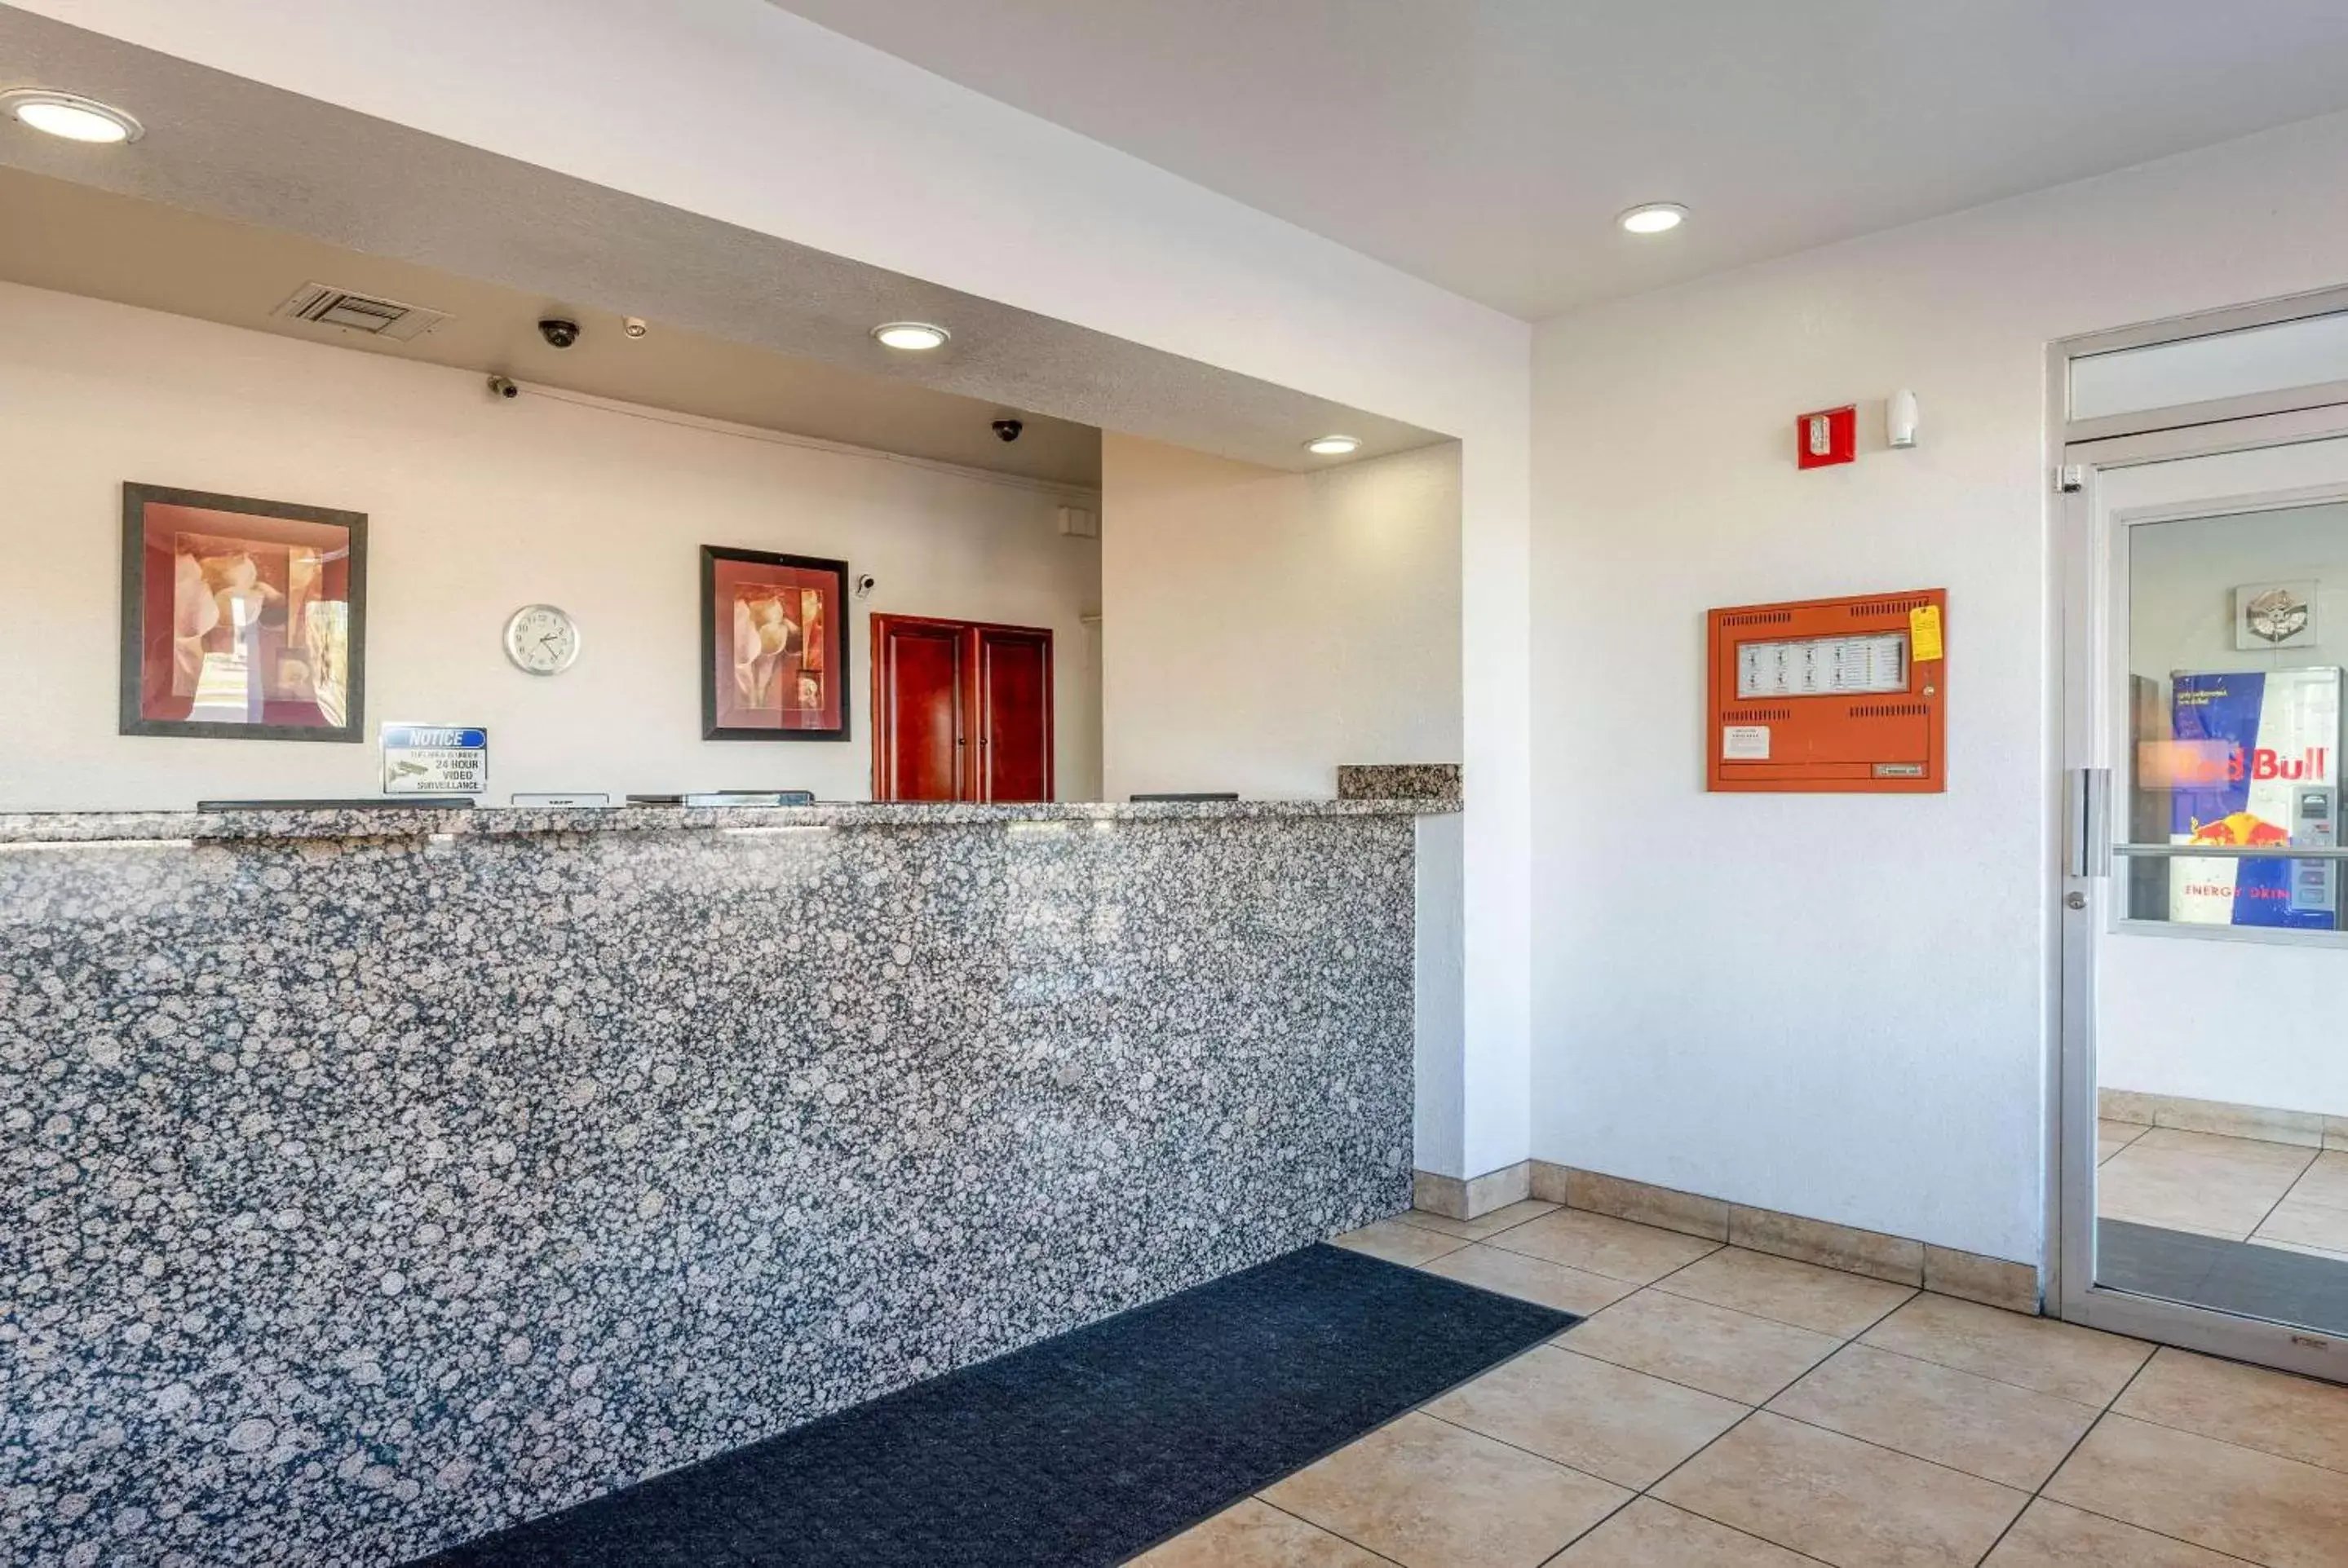 Lobby or reception, Lobby/Reception in Rodeway Inn Phoenix North I-17